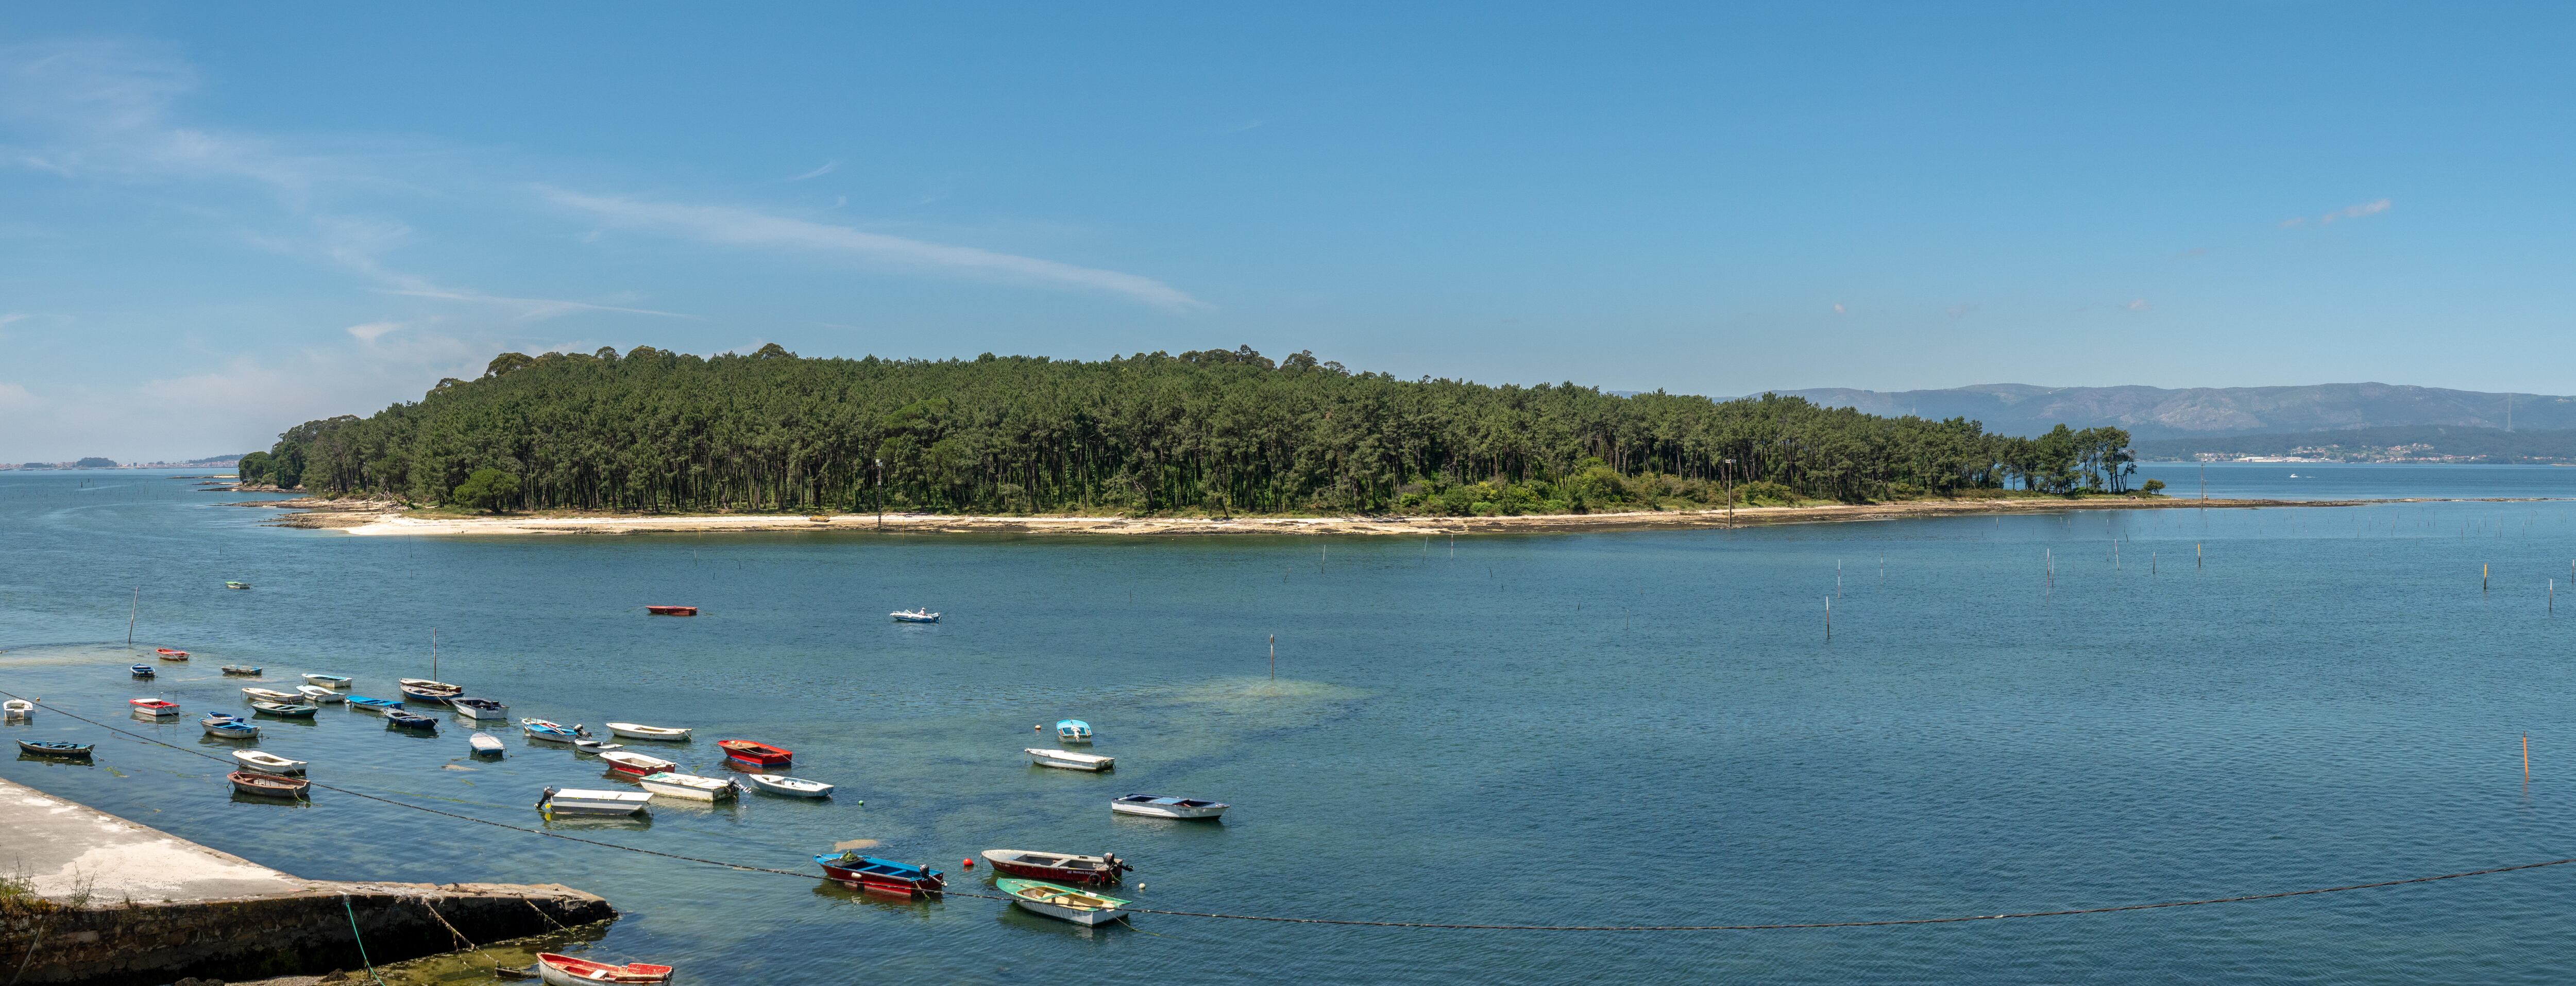 Vista de la isla de Cortegada (Pontevedra).